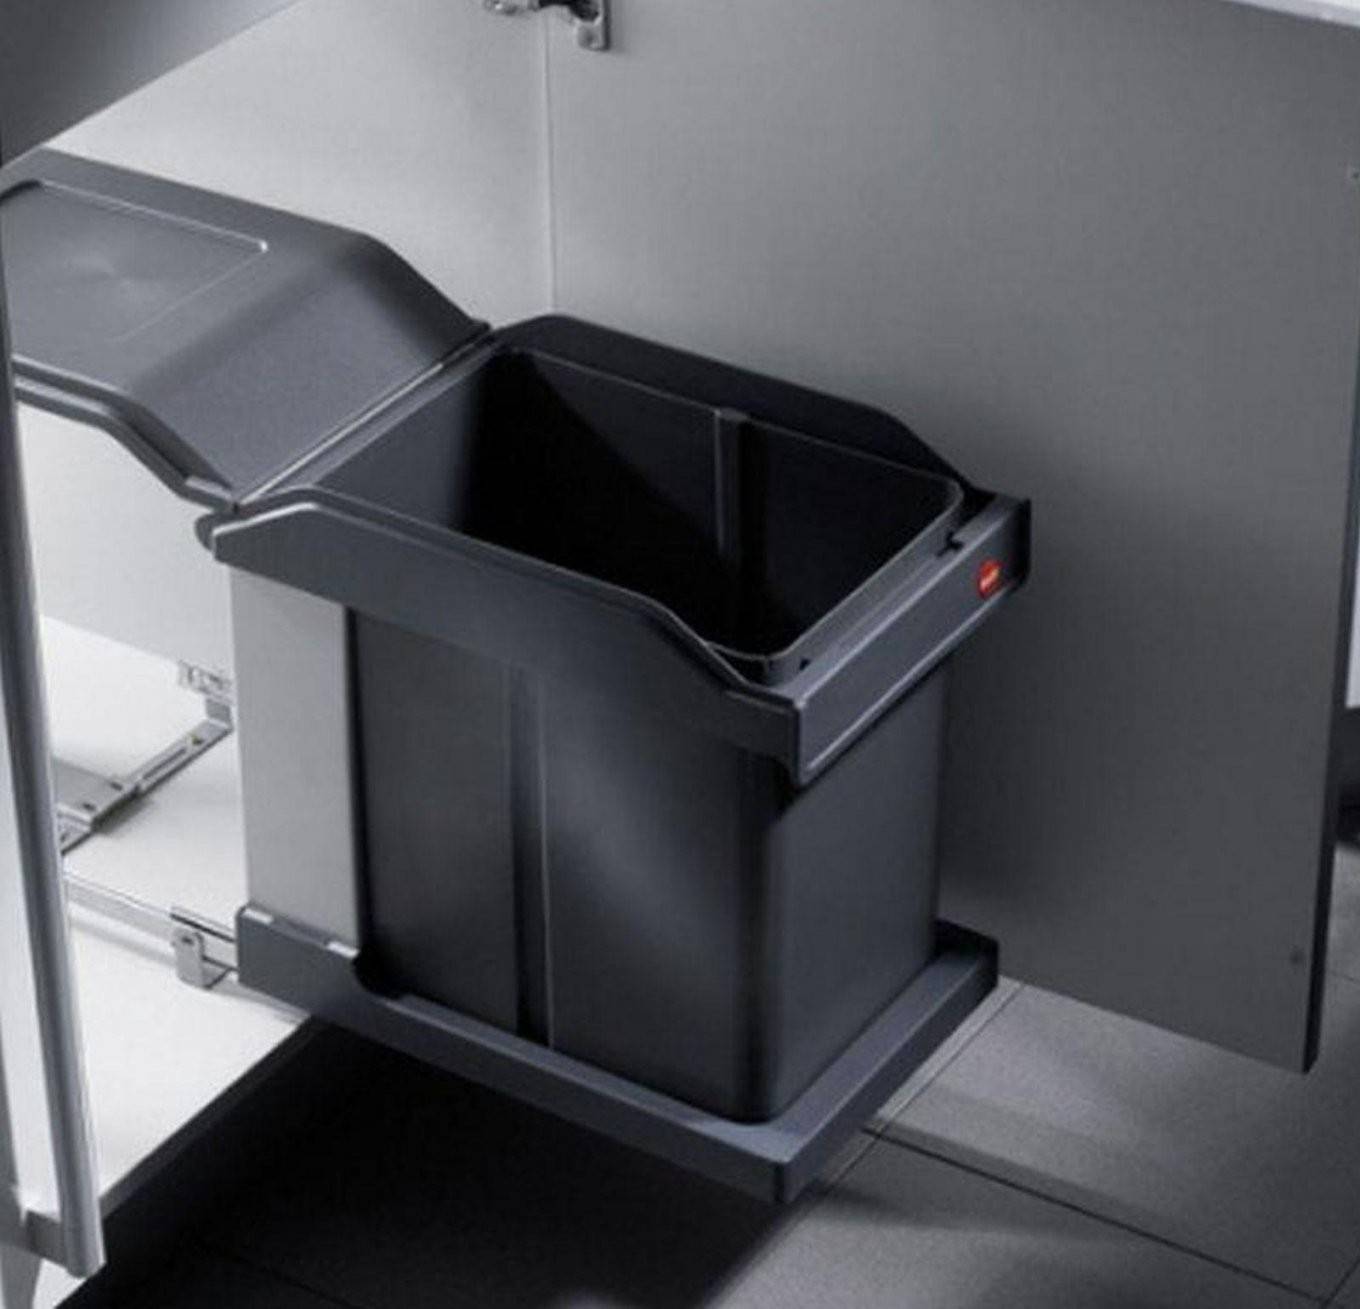 Мусорное ведро для кухни: система под мусор в кухонный гарнитур, идеи куда поставить на кухне, встраиваемая техника по переработке отходов